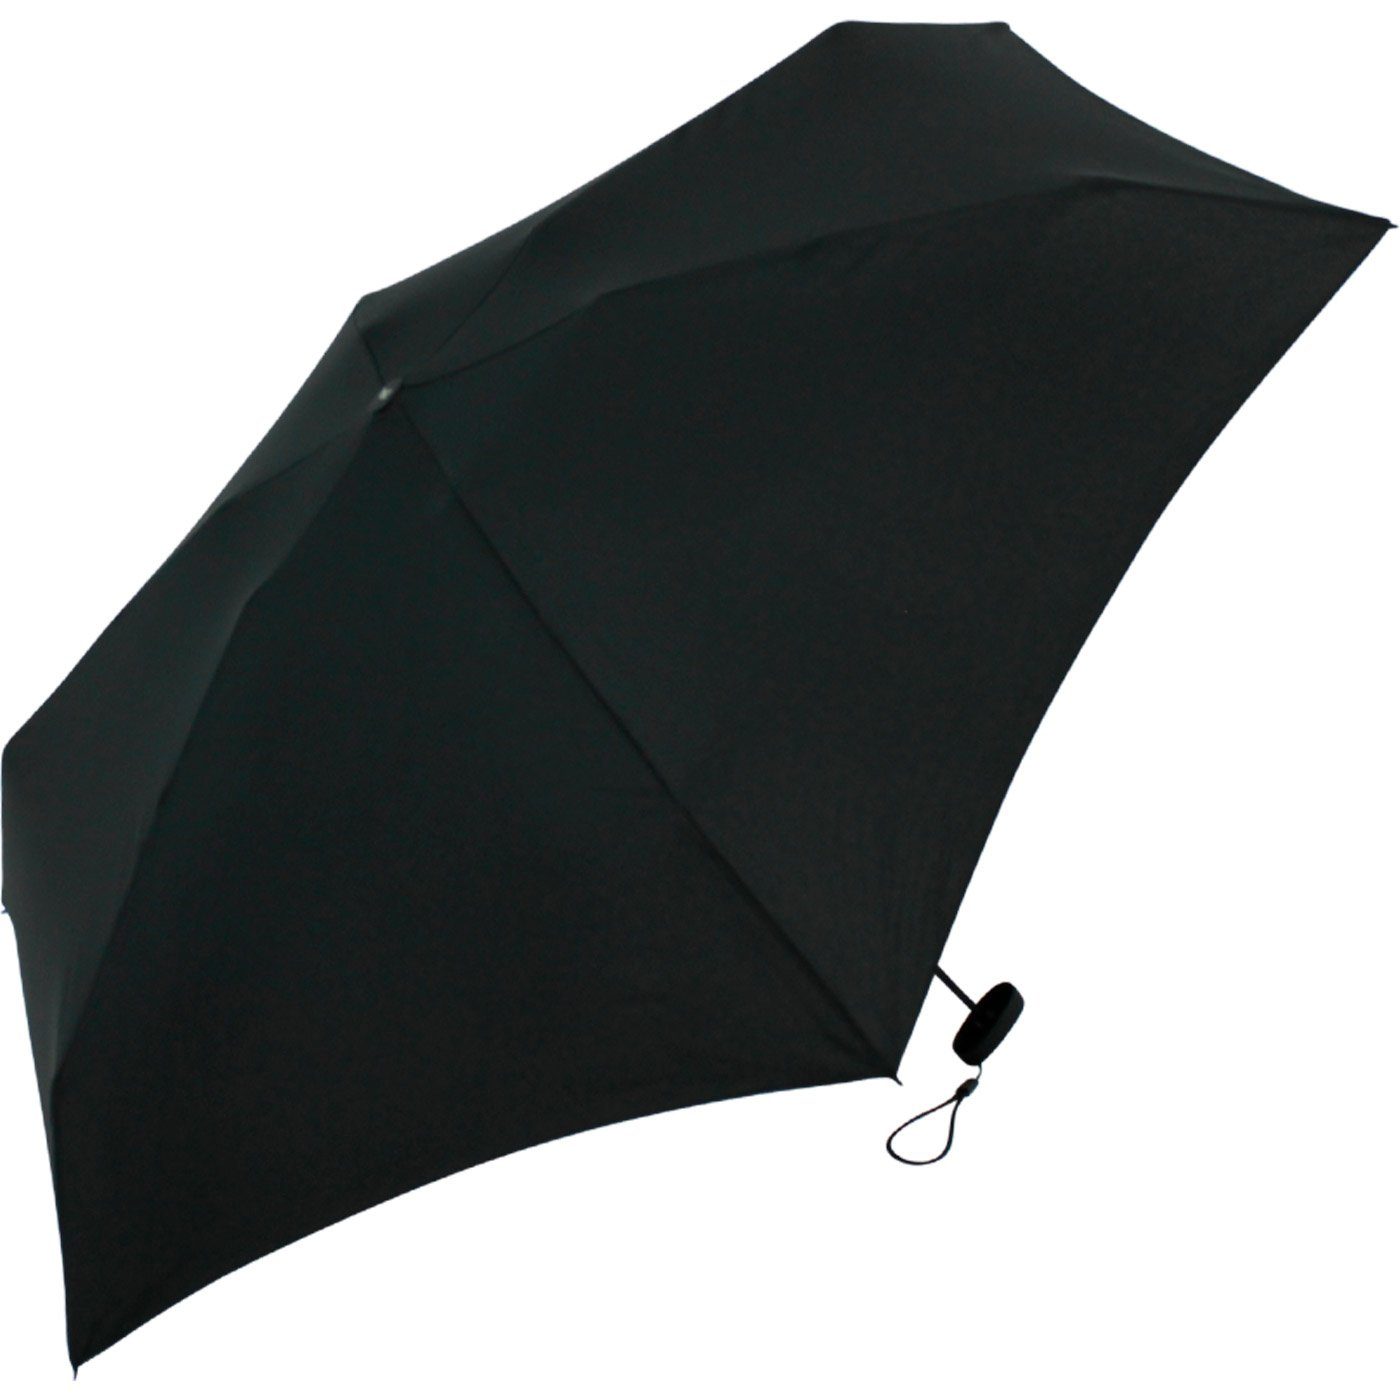 winziger Format, Handy Mini mit iX-brella schwarz Schirm ultra-klein, Softcase-Etui - Ultra Taschenregenschirm 15 cm im